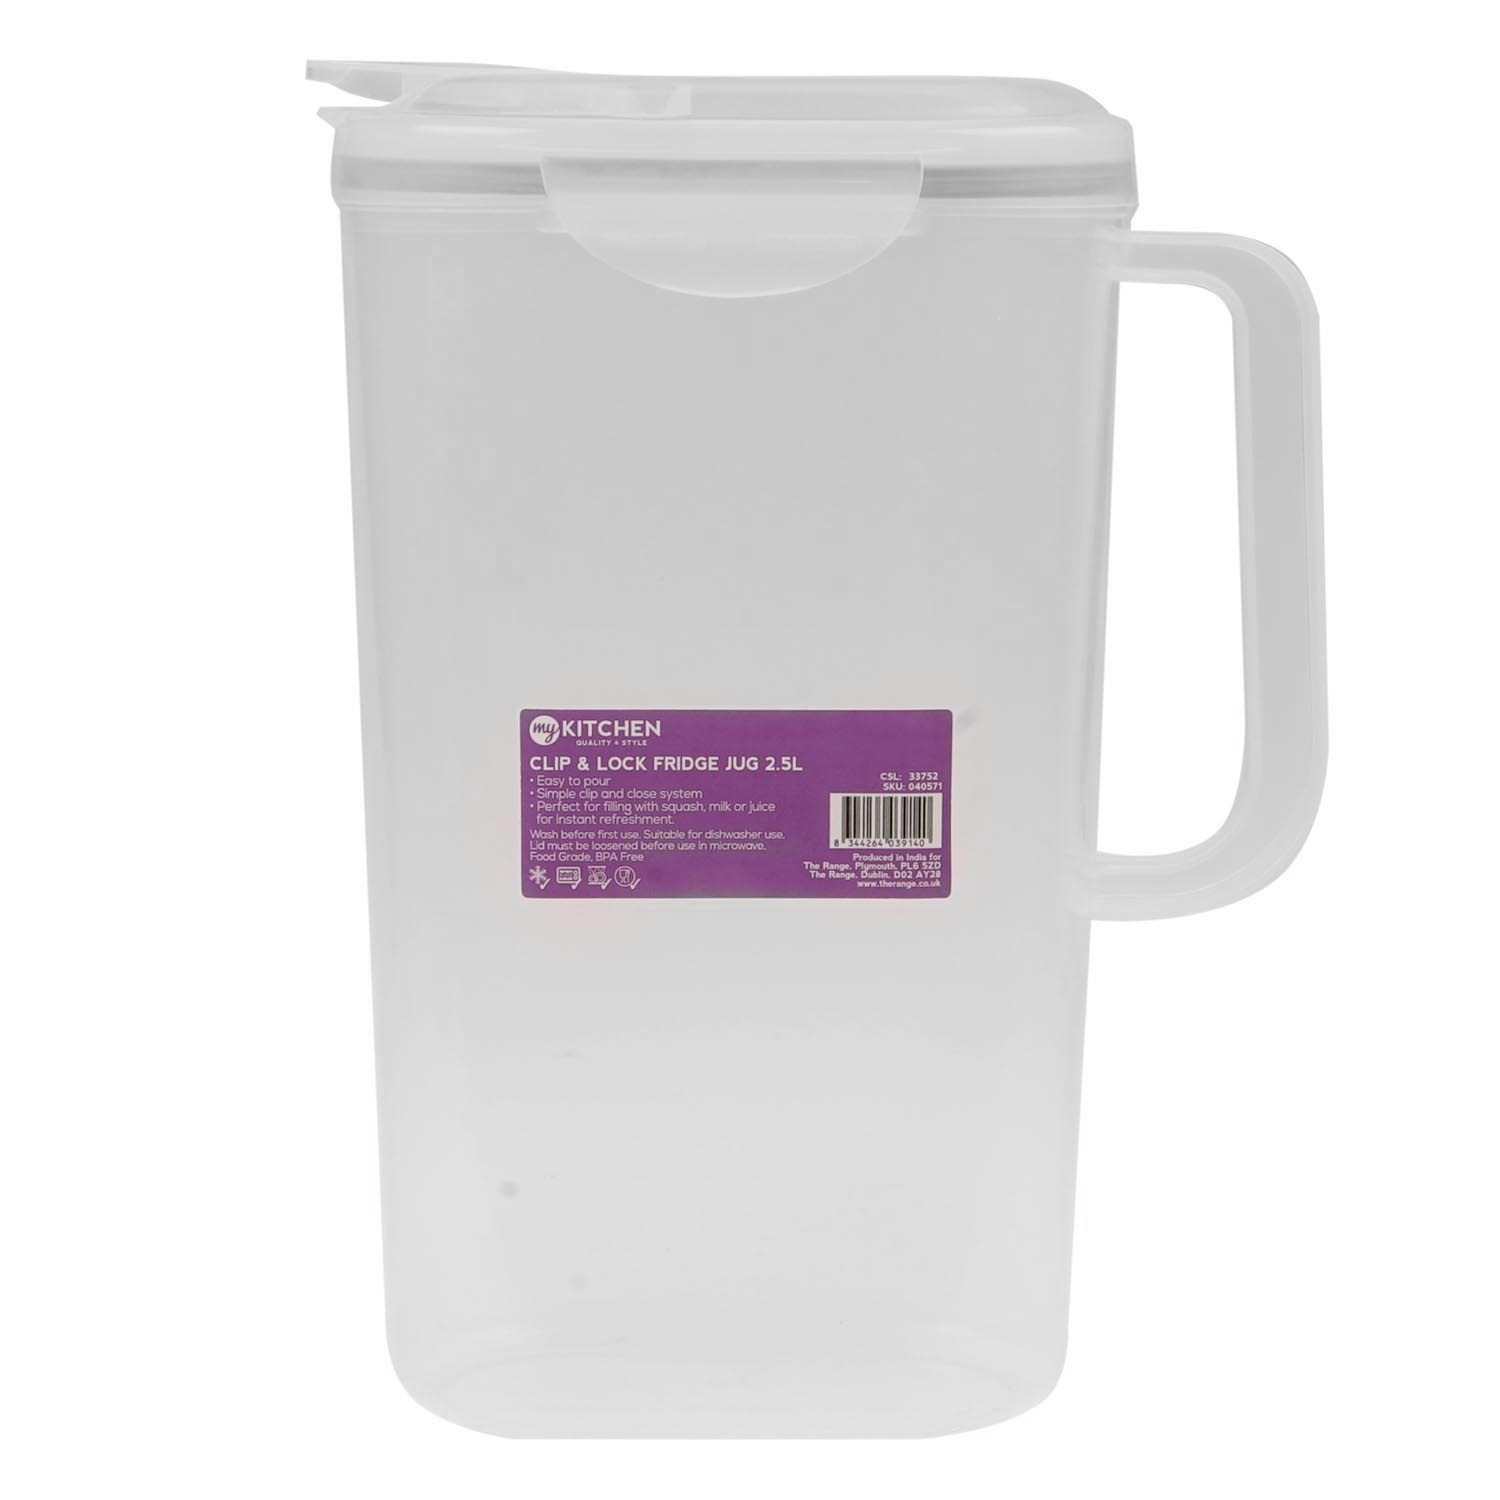 Slim Plastic Fridge Door Jug 1.2L Water Juice Milk Storage Easy